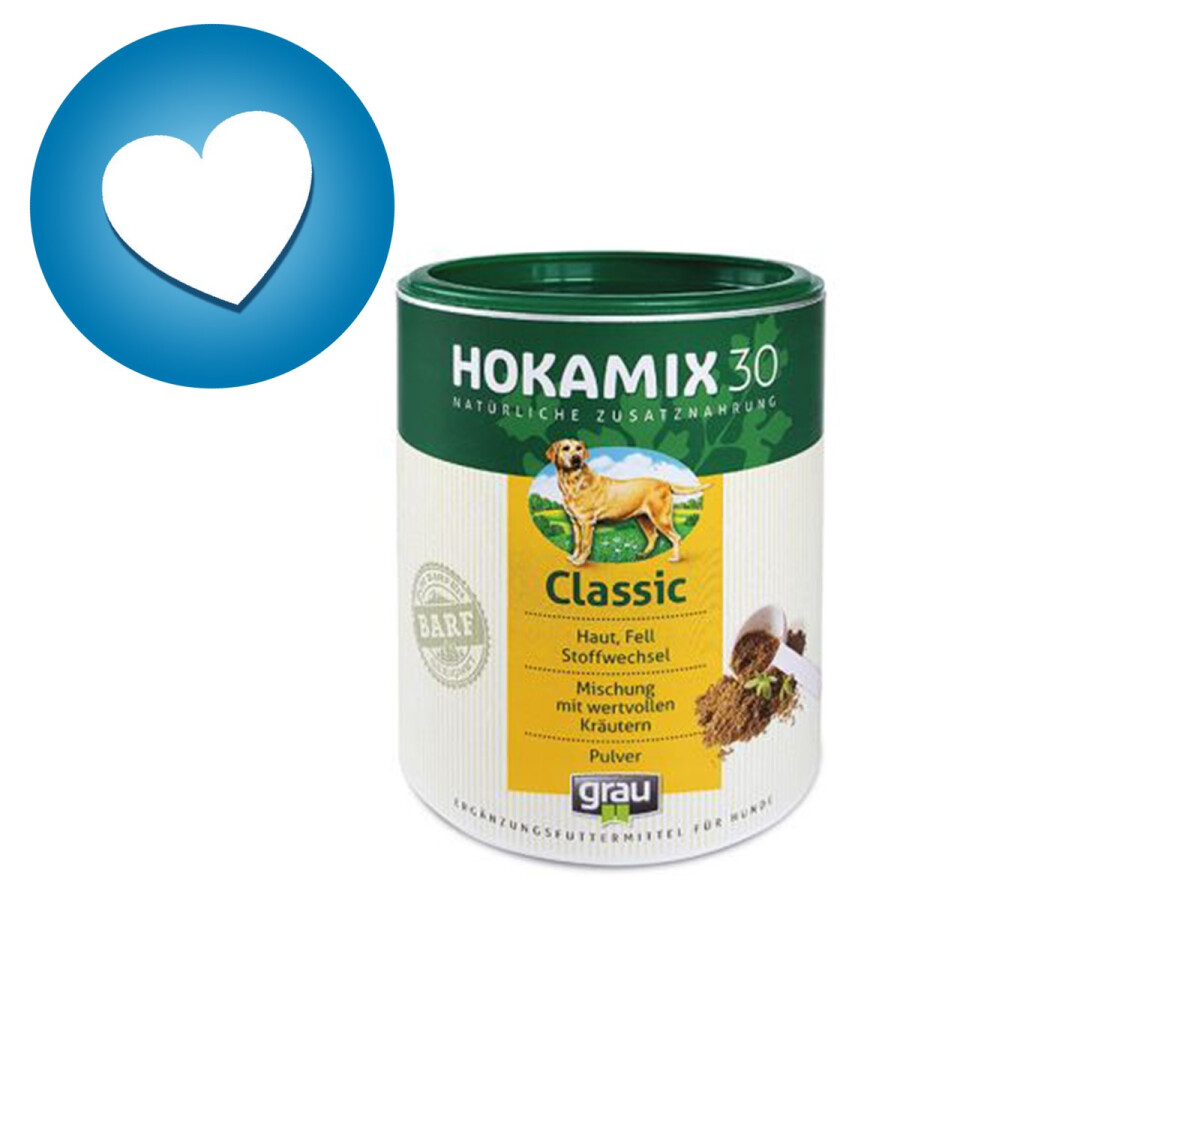 Zg1000 - Supplément Alimentaire en Poudre pour Animaux - Hokamix 30